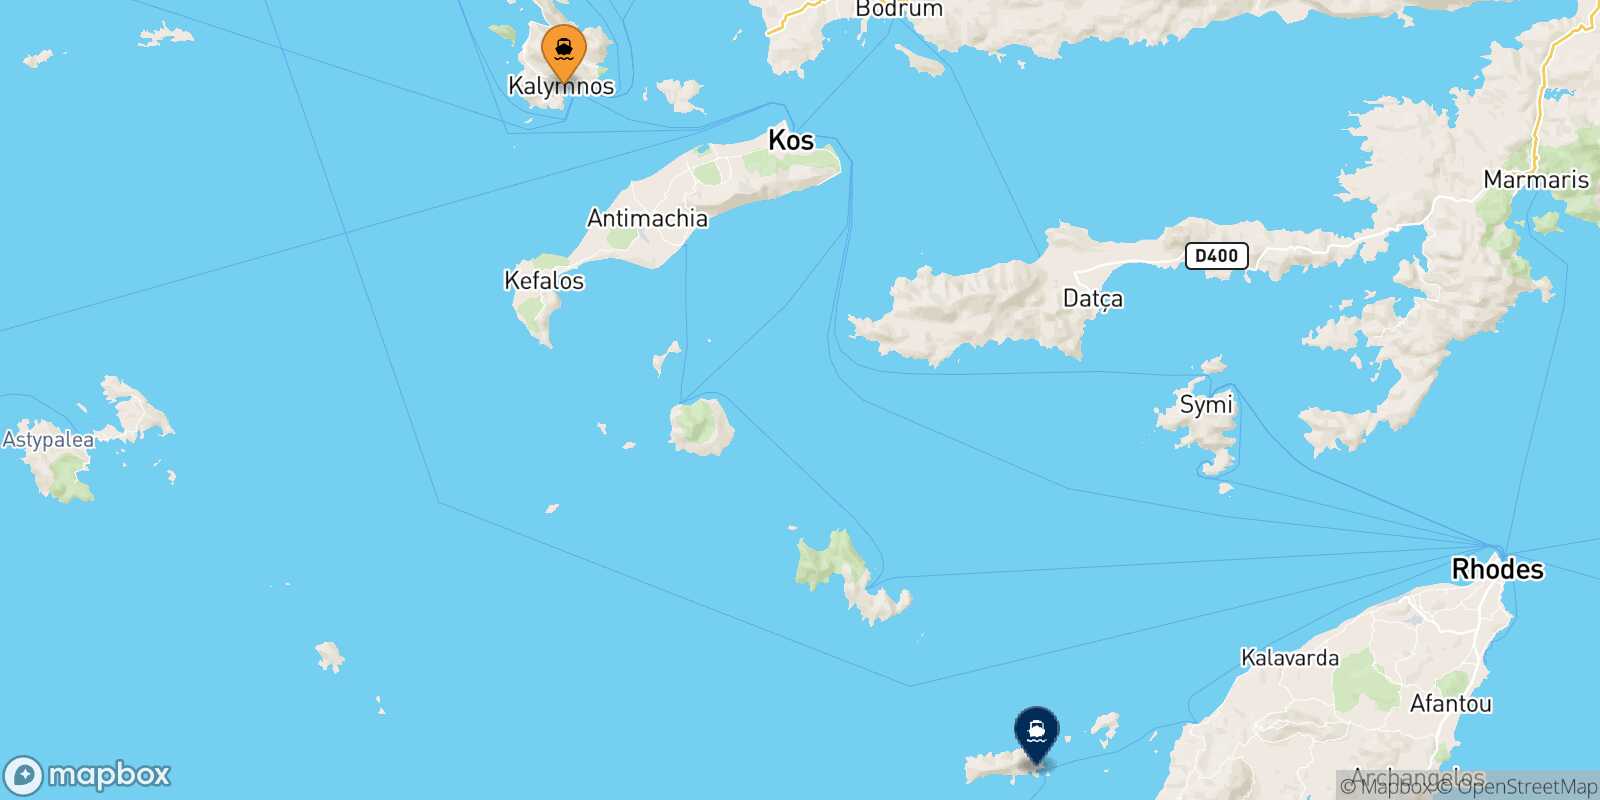 Mapa de la ruta Kalymnos Chalki